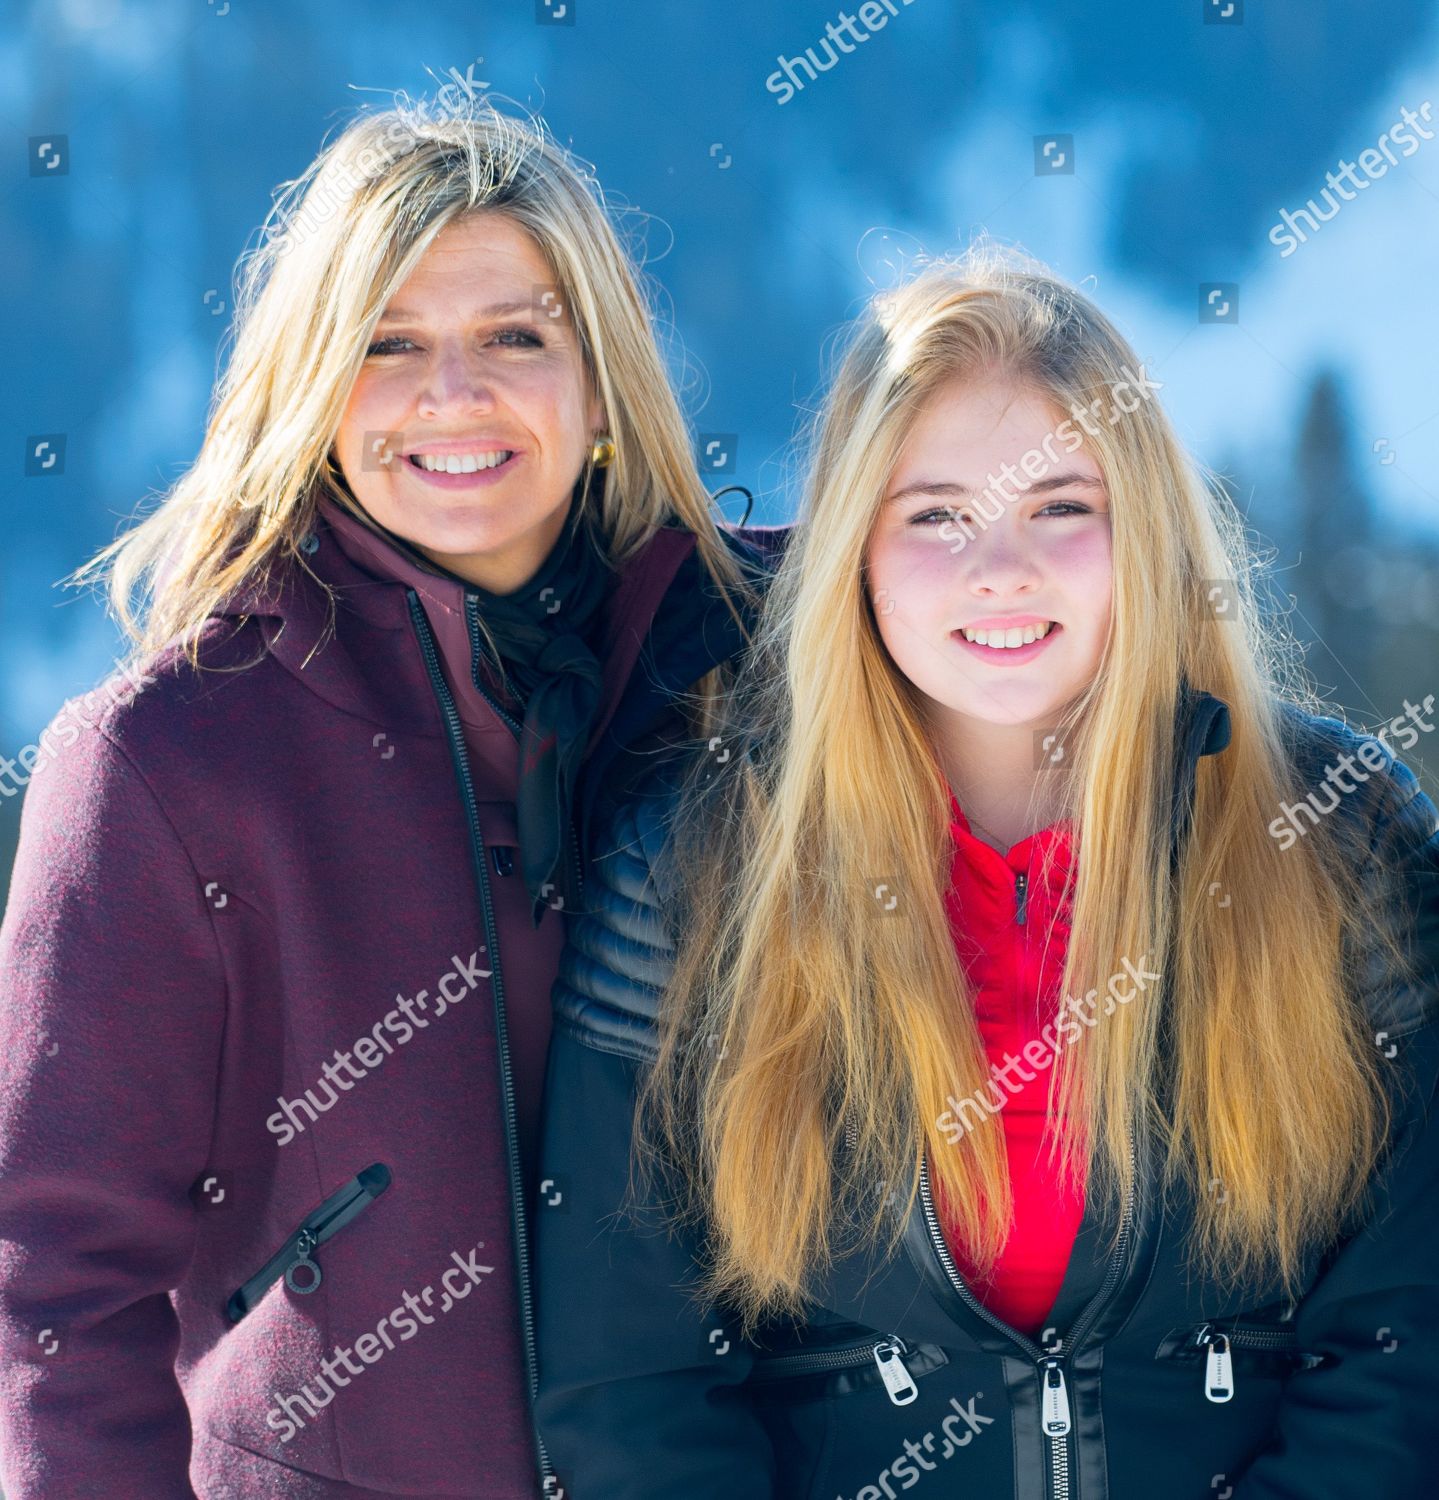 dutch-royals-winter-holiday-photocall-lech-austria-shutterstock-editorial-10118946u.jpg